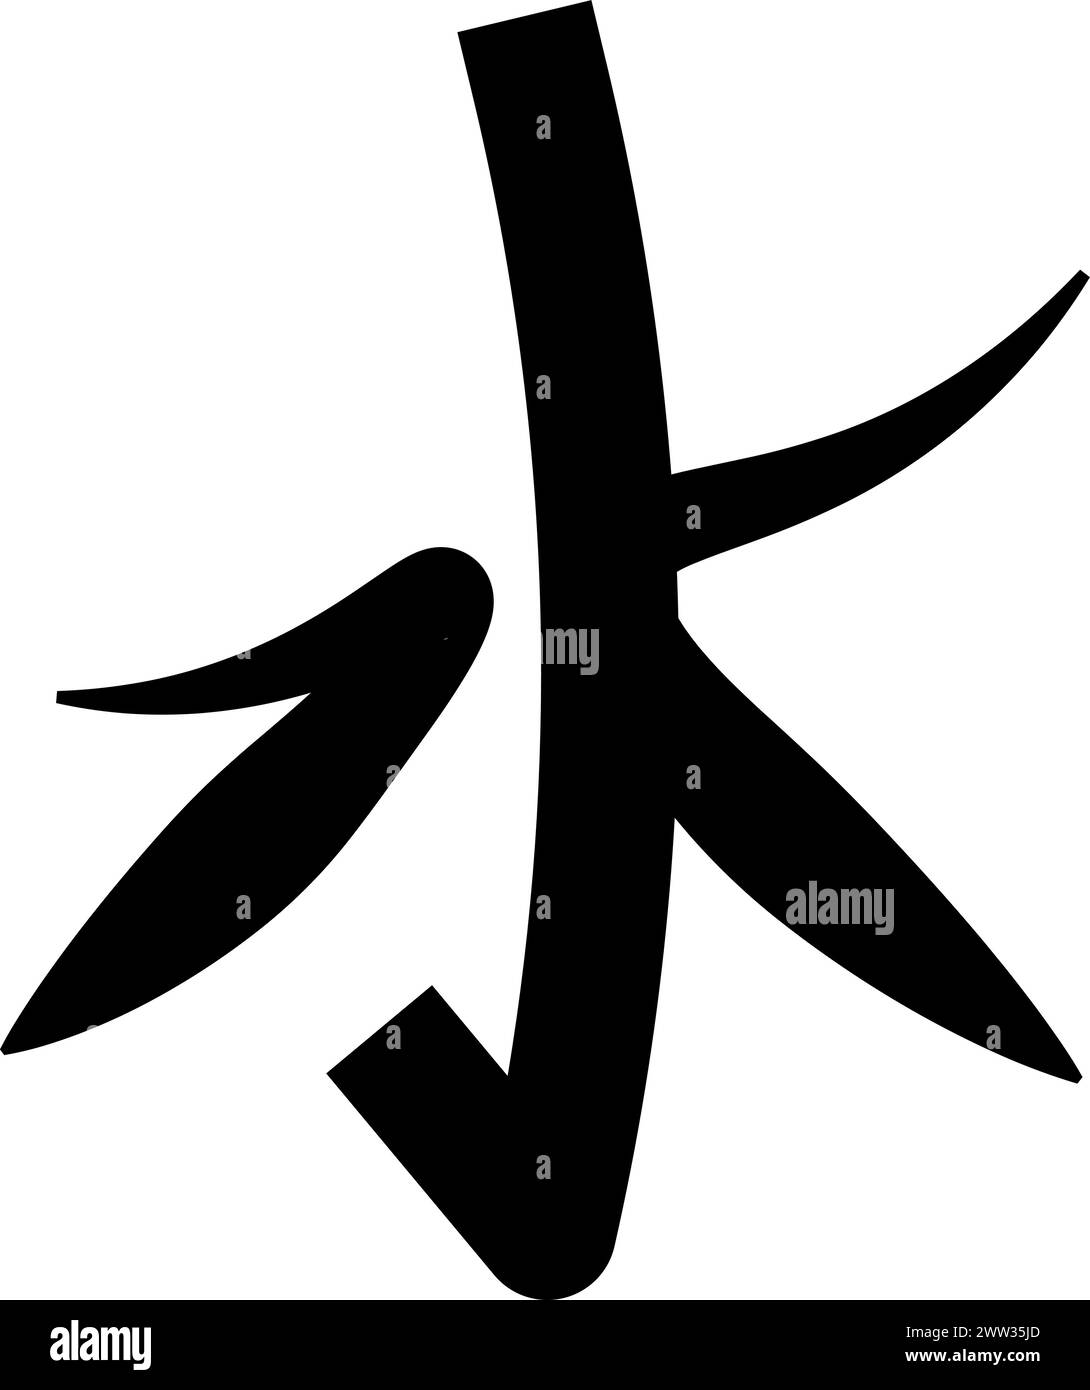 Caratteri geroglifici simbolo religioso mistico. Segno spirituale cinese della cultura tradizionale di culto e venerazione. Nero semplice e bianco Illustrazione Vettoriale